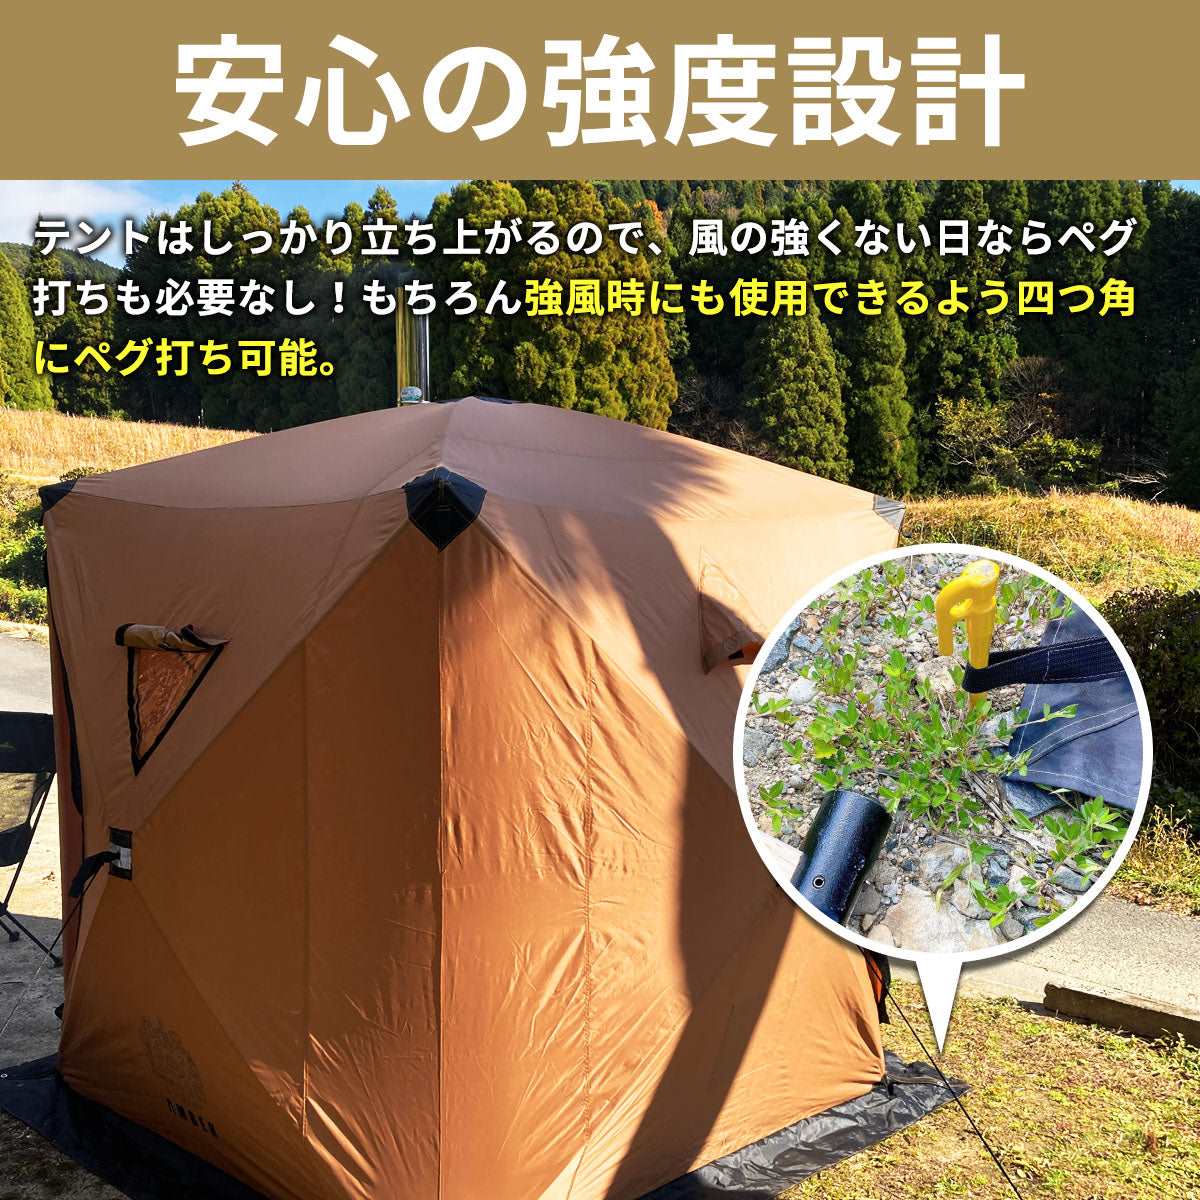 AMBER テント型サウナ totonoi2 (Aセット)ストーブコンロセット A-41 